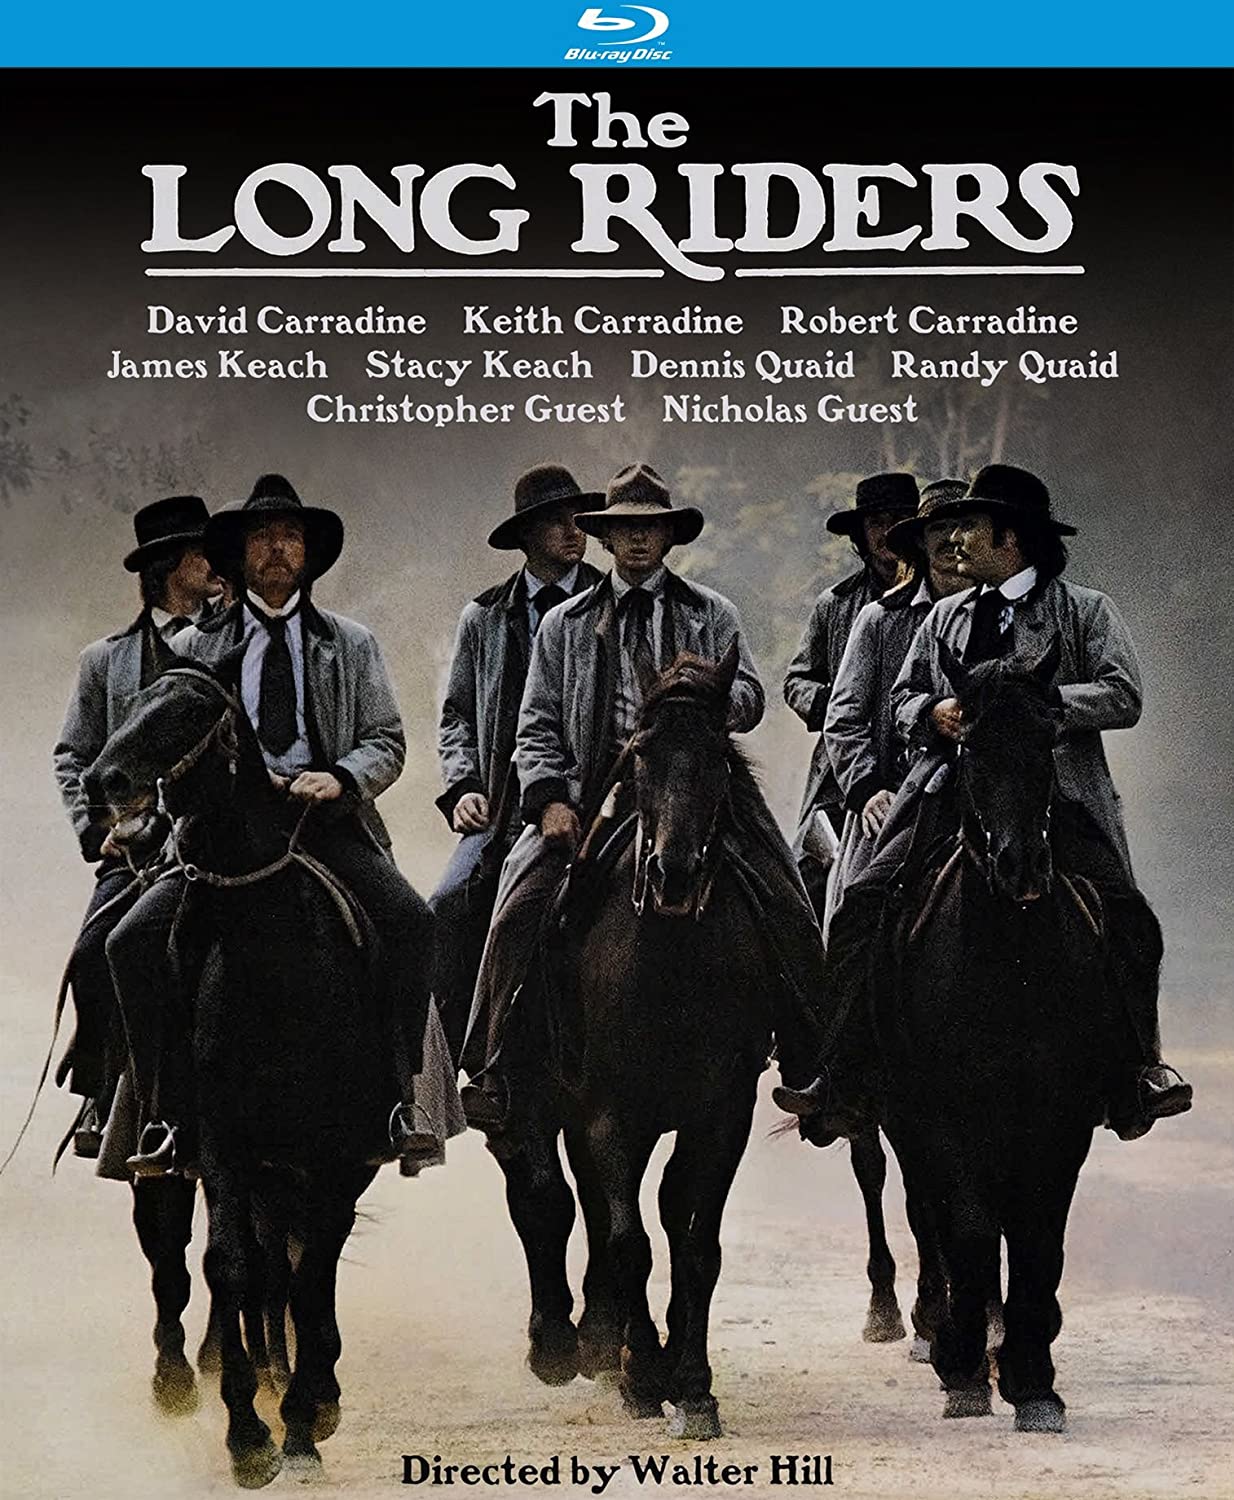 The Long Riders 1980 4K RM KL 1080p Bluray DTS 5 1 x264-mintHD NL